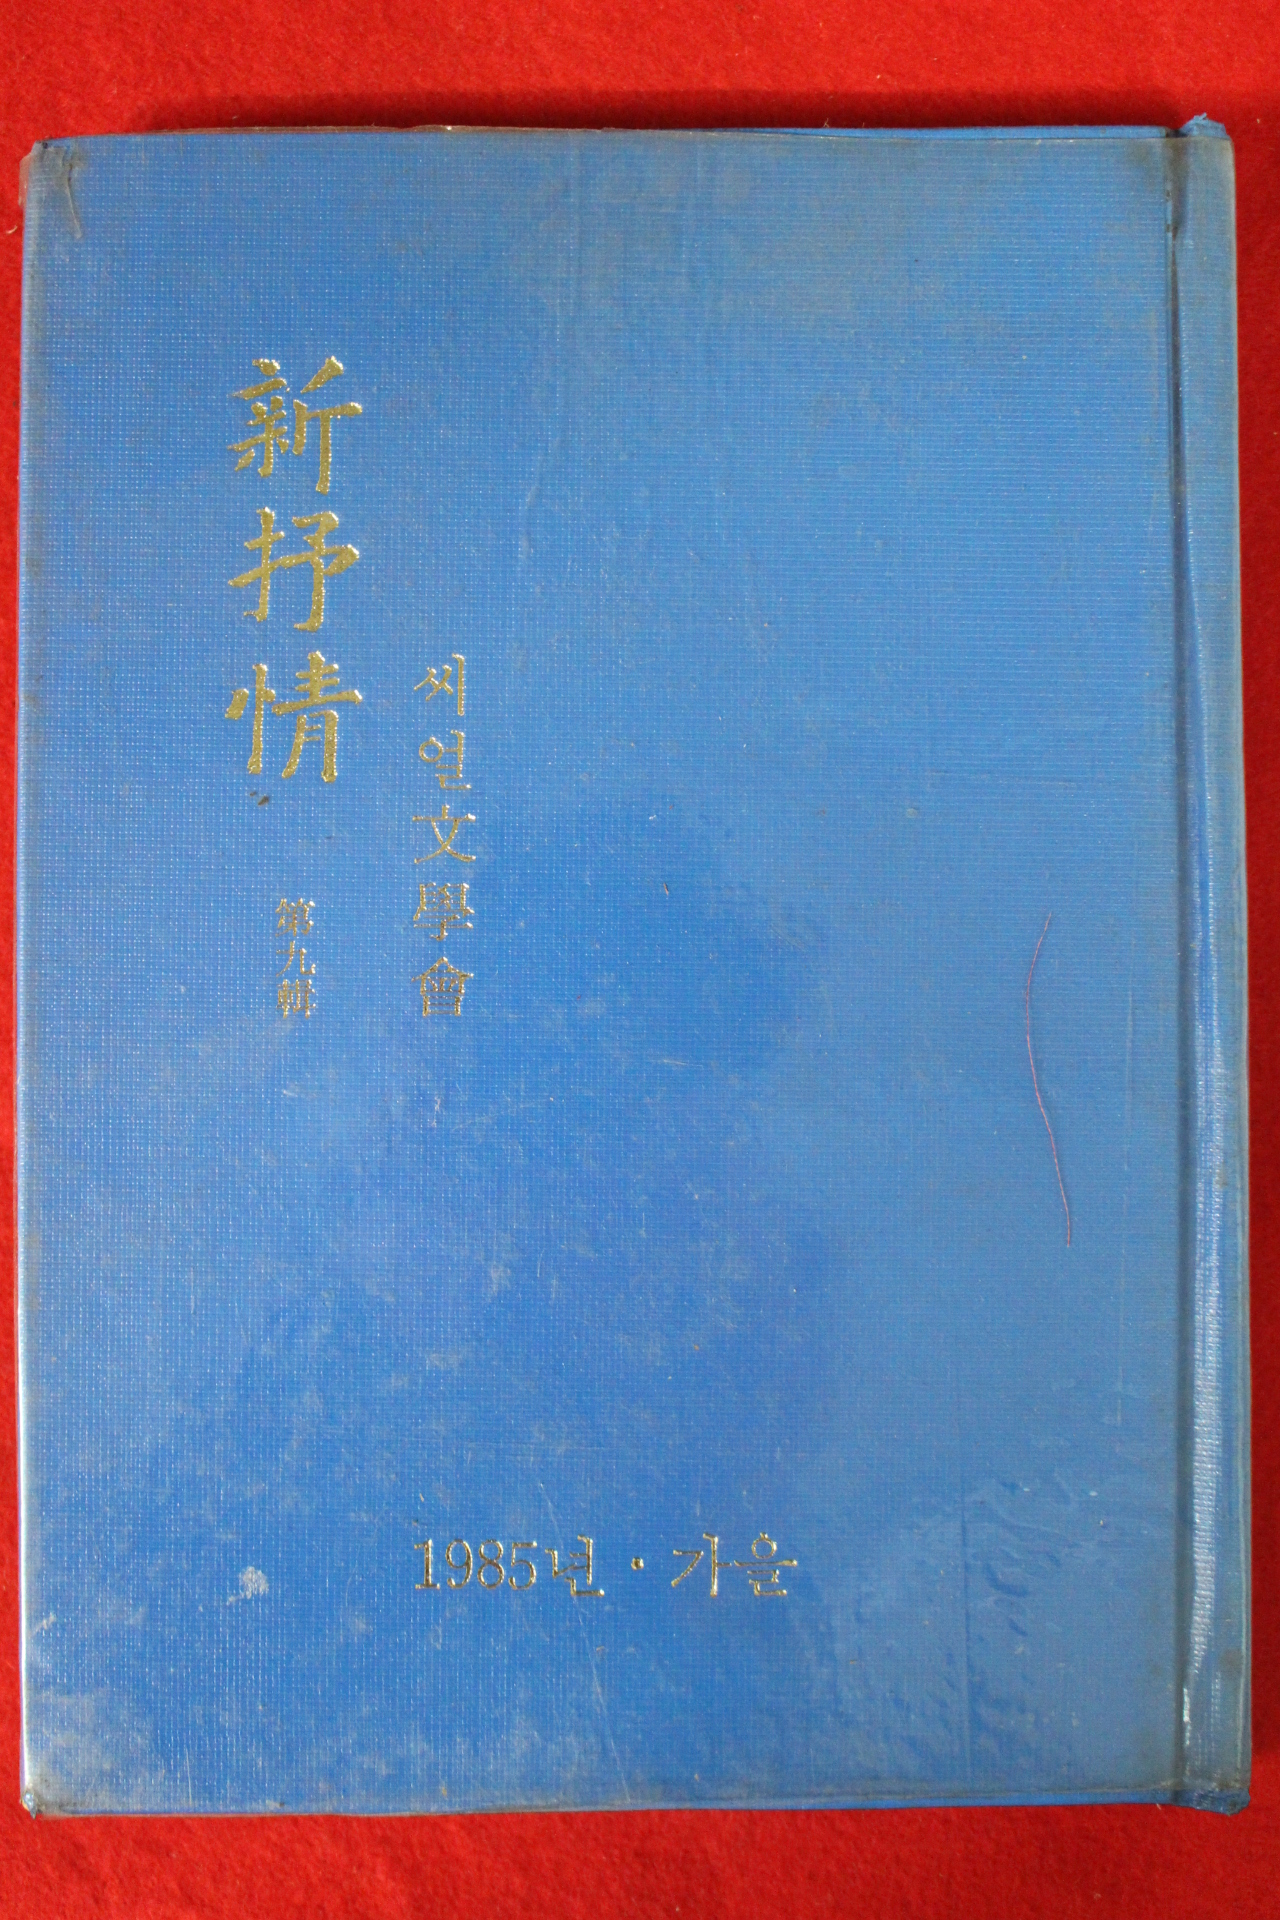 1985년 씨얼문학회 신서정(新抒情)